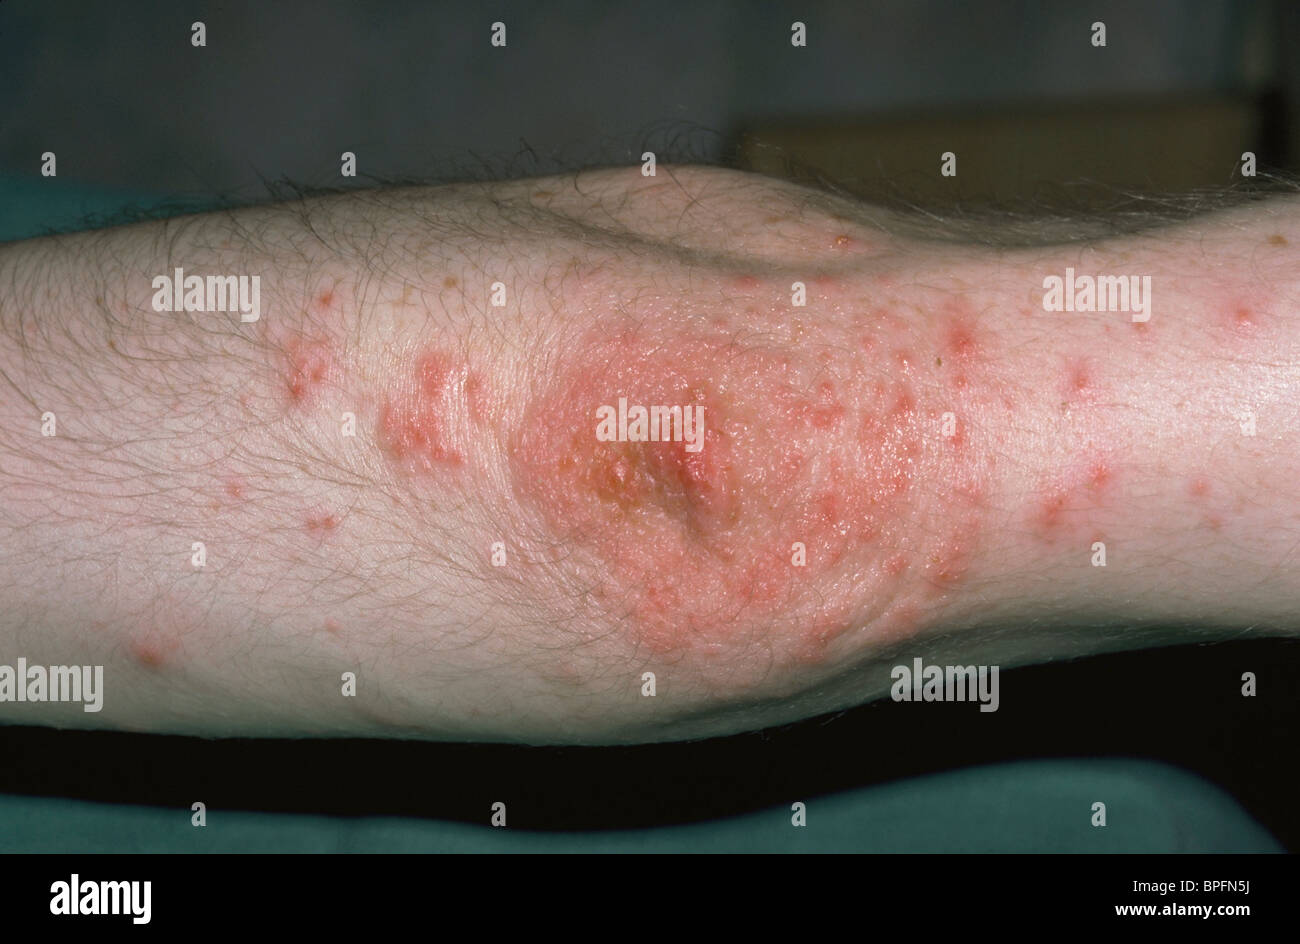 vasculitis on a human limb Stock Photo